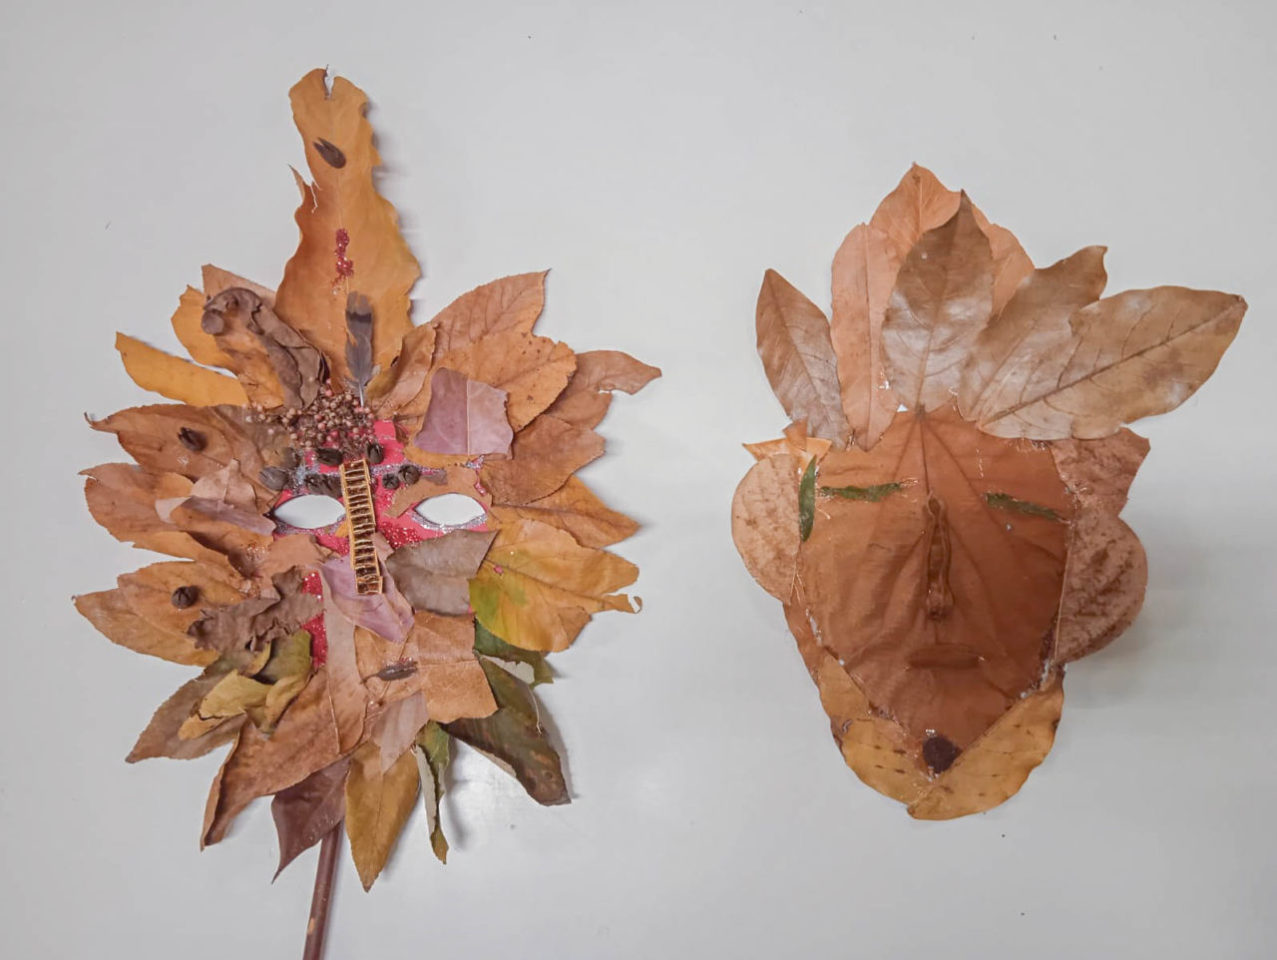 Nesta imagem contém duas máscaras produzidas pelos alunos com os elementos naturais (folhas e galhos) coletados no dia da visita.